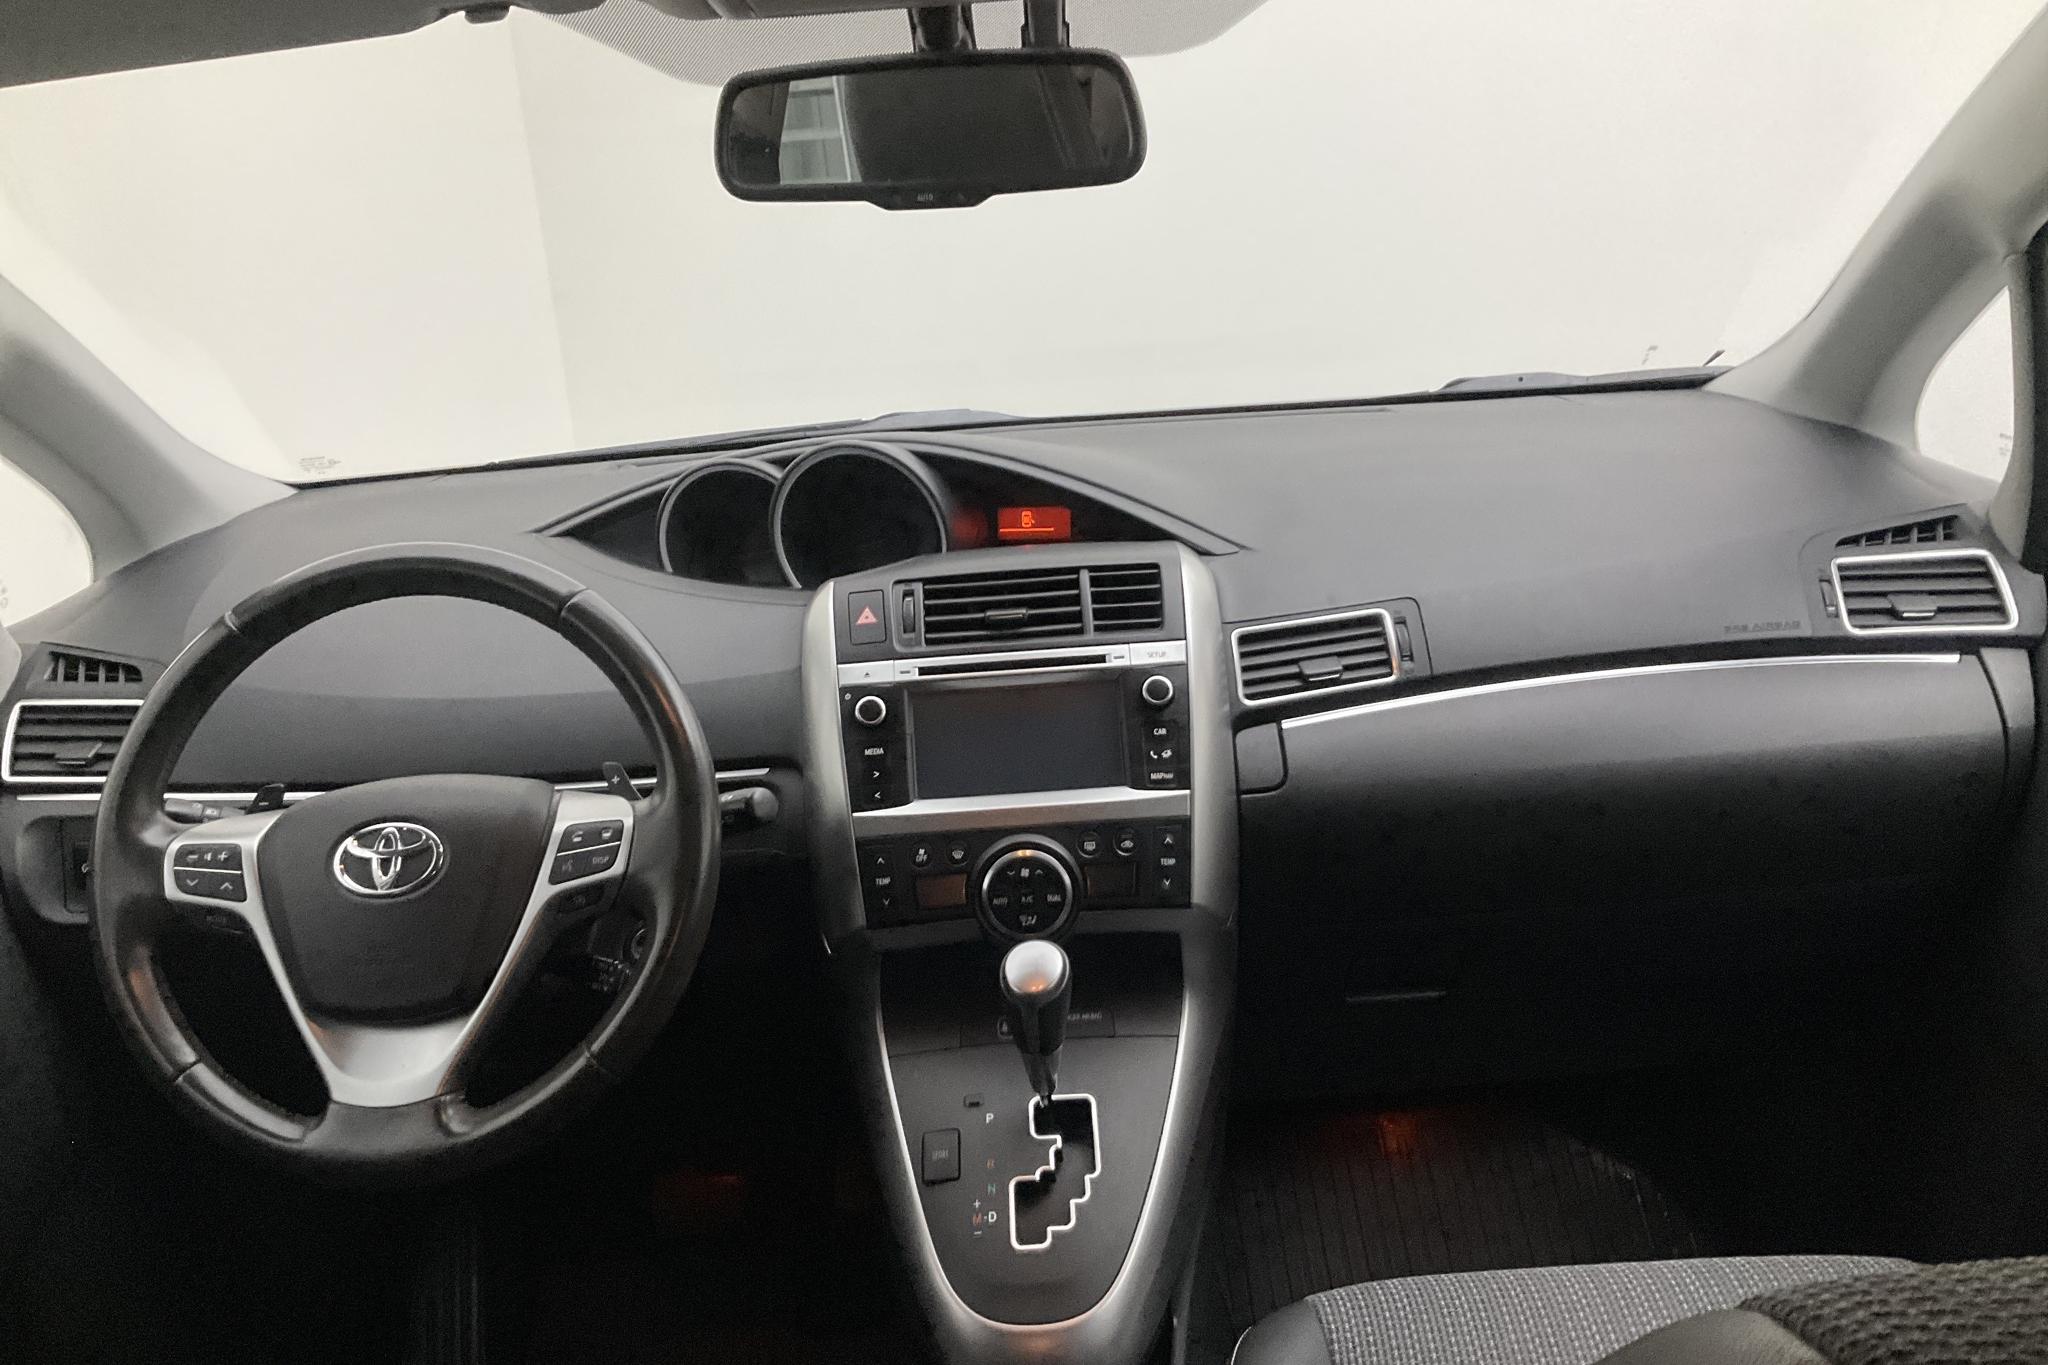 Toyota Verso VVT-i 1.8 (147hk) - 200 690 km - Automatic - white - 2015